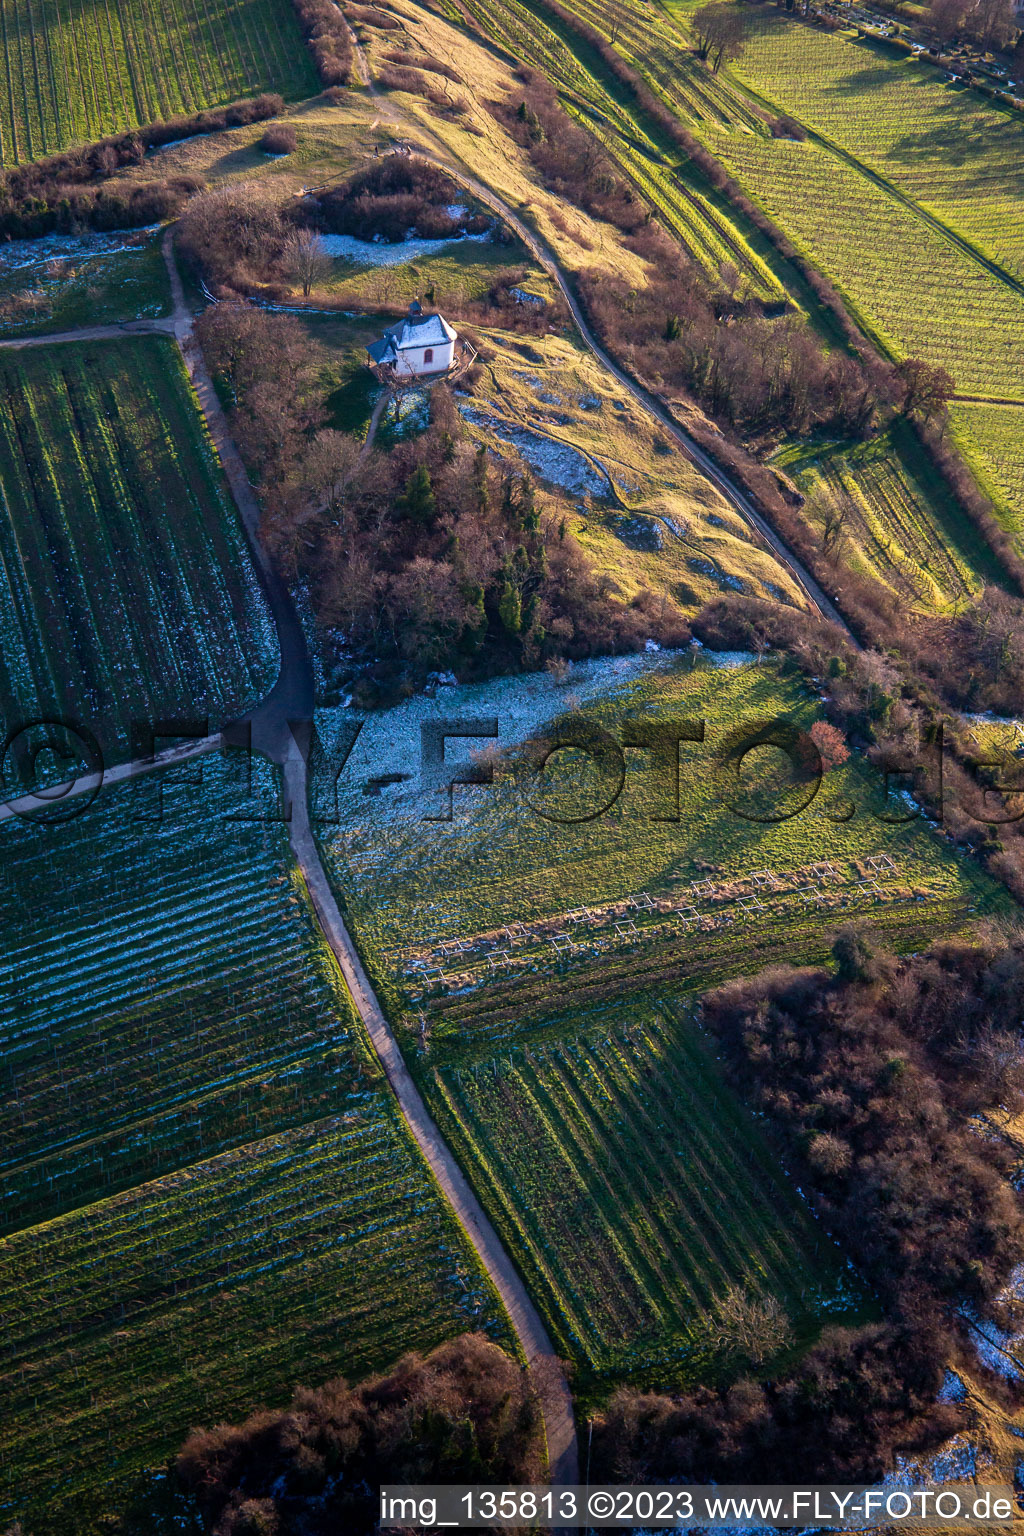 Luftbild von Kapelle "Kleine Kalmit" im Naturschutzgebiet Kleine Kalmit im Ortsteil Arzheim in Landau in der Pfalz im Bundesland Rheinland-Pfalz, Deutschland